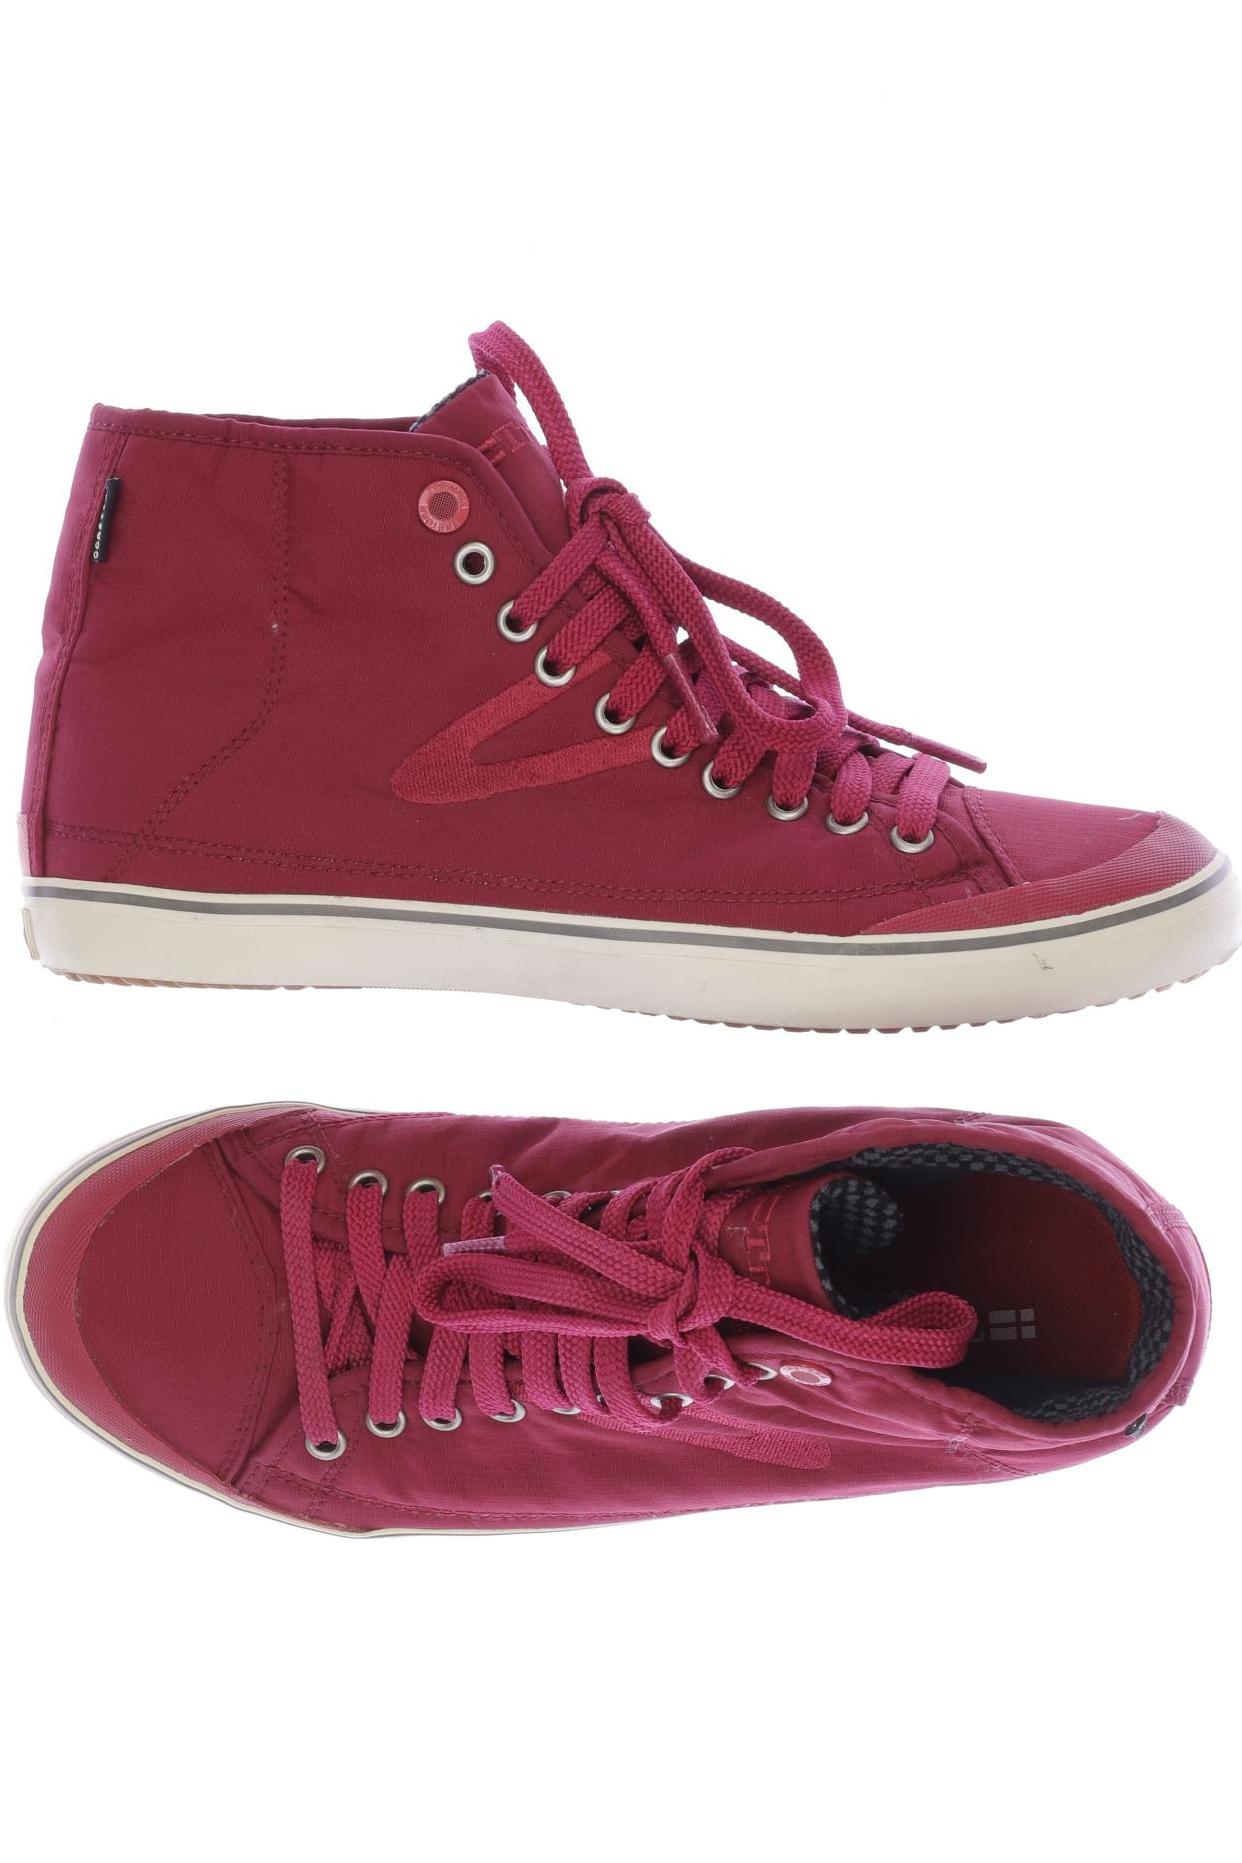 Tretorn Herren Sneakers, pink von Tretorn